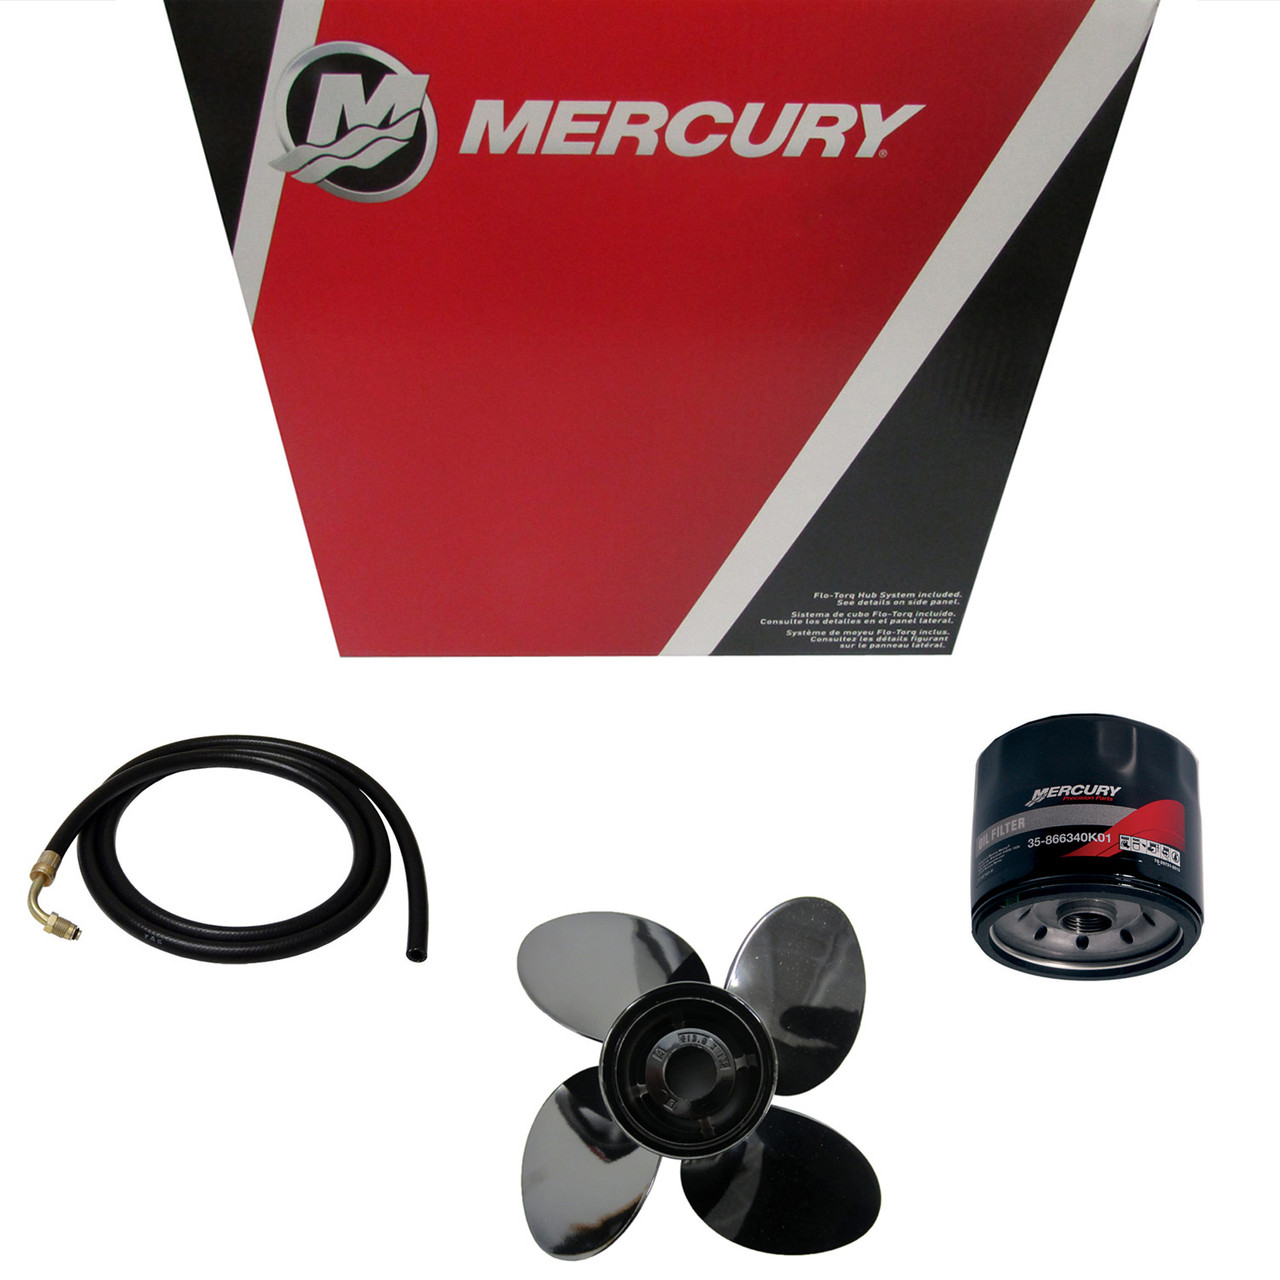 Mercury Marine / Mercruiser New OEM Gear Lube, 858065Q01